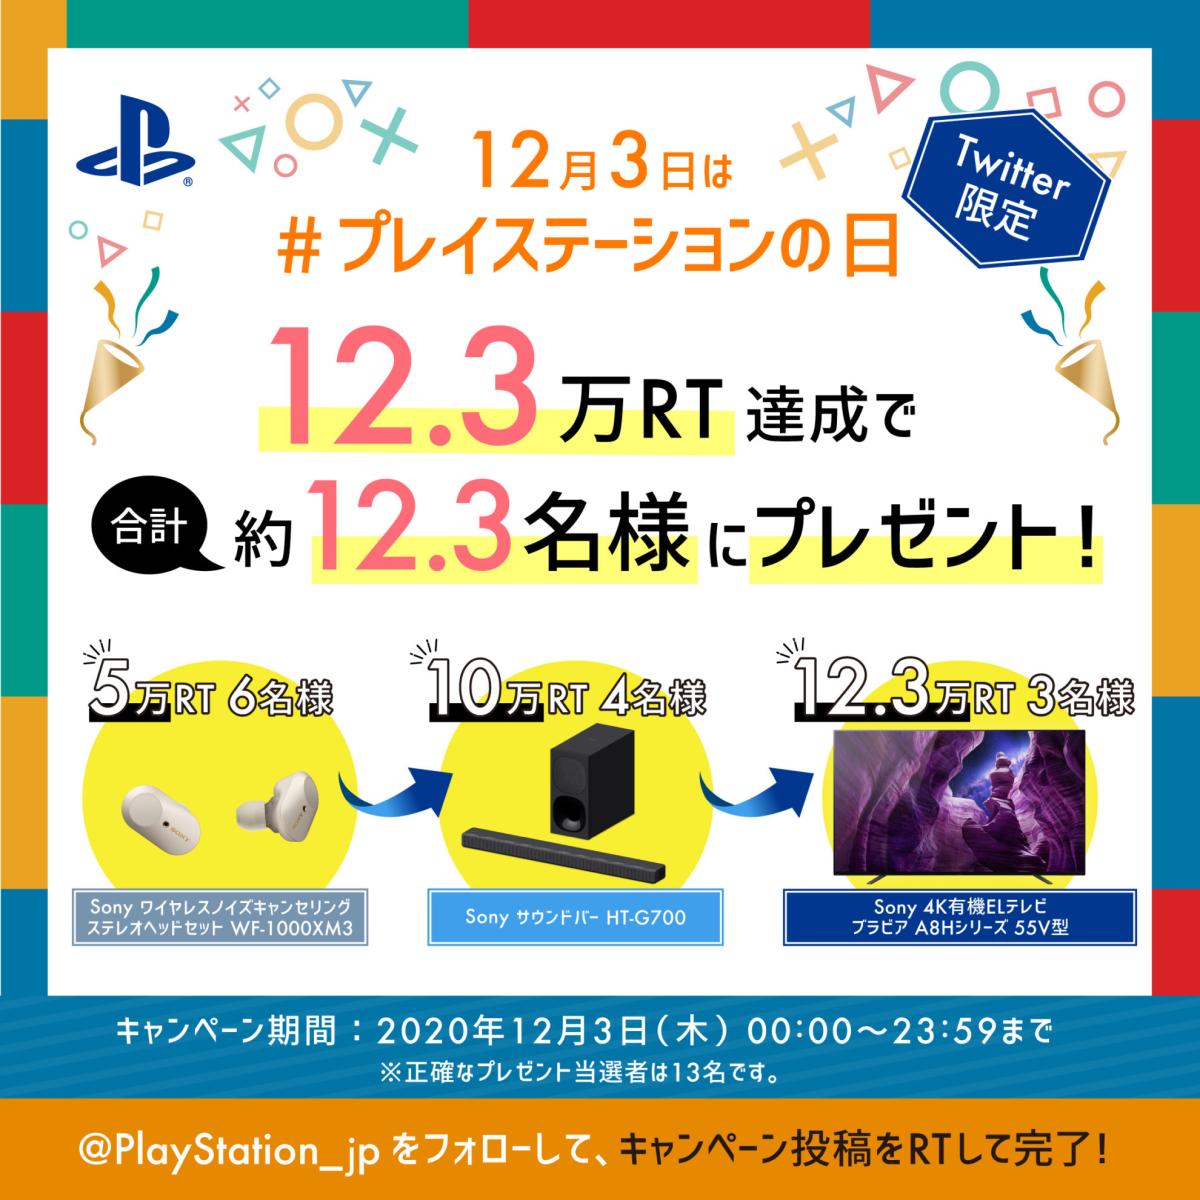 初代“PlayStation”発売日記念「#プレイステーションの日」キャンペーン開催、豪華プレゼントも fcb133219cec293c38405505ae4ac0a5